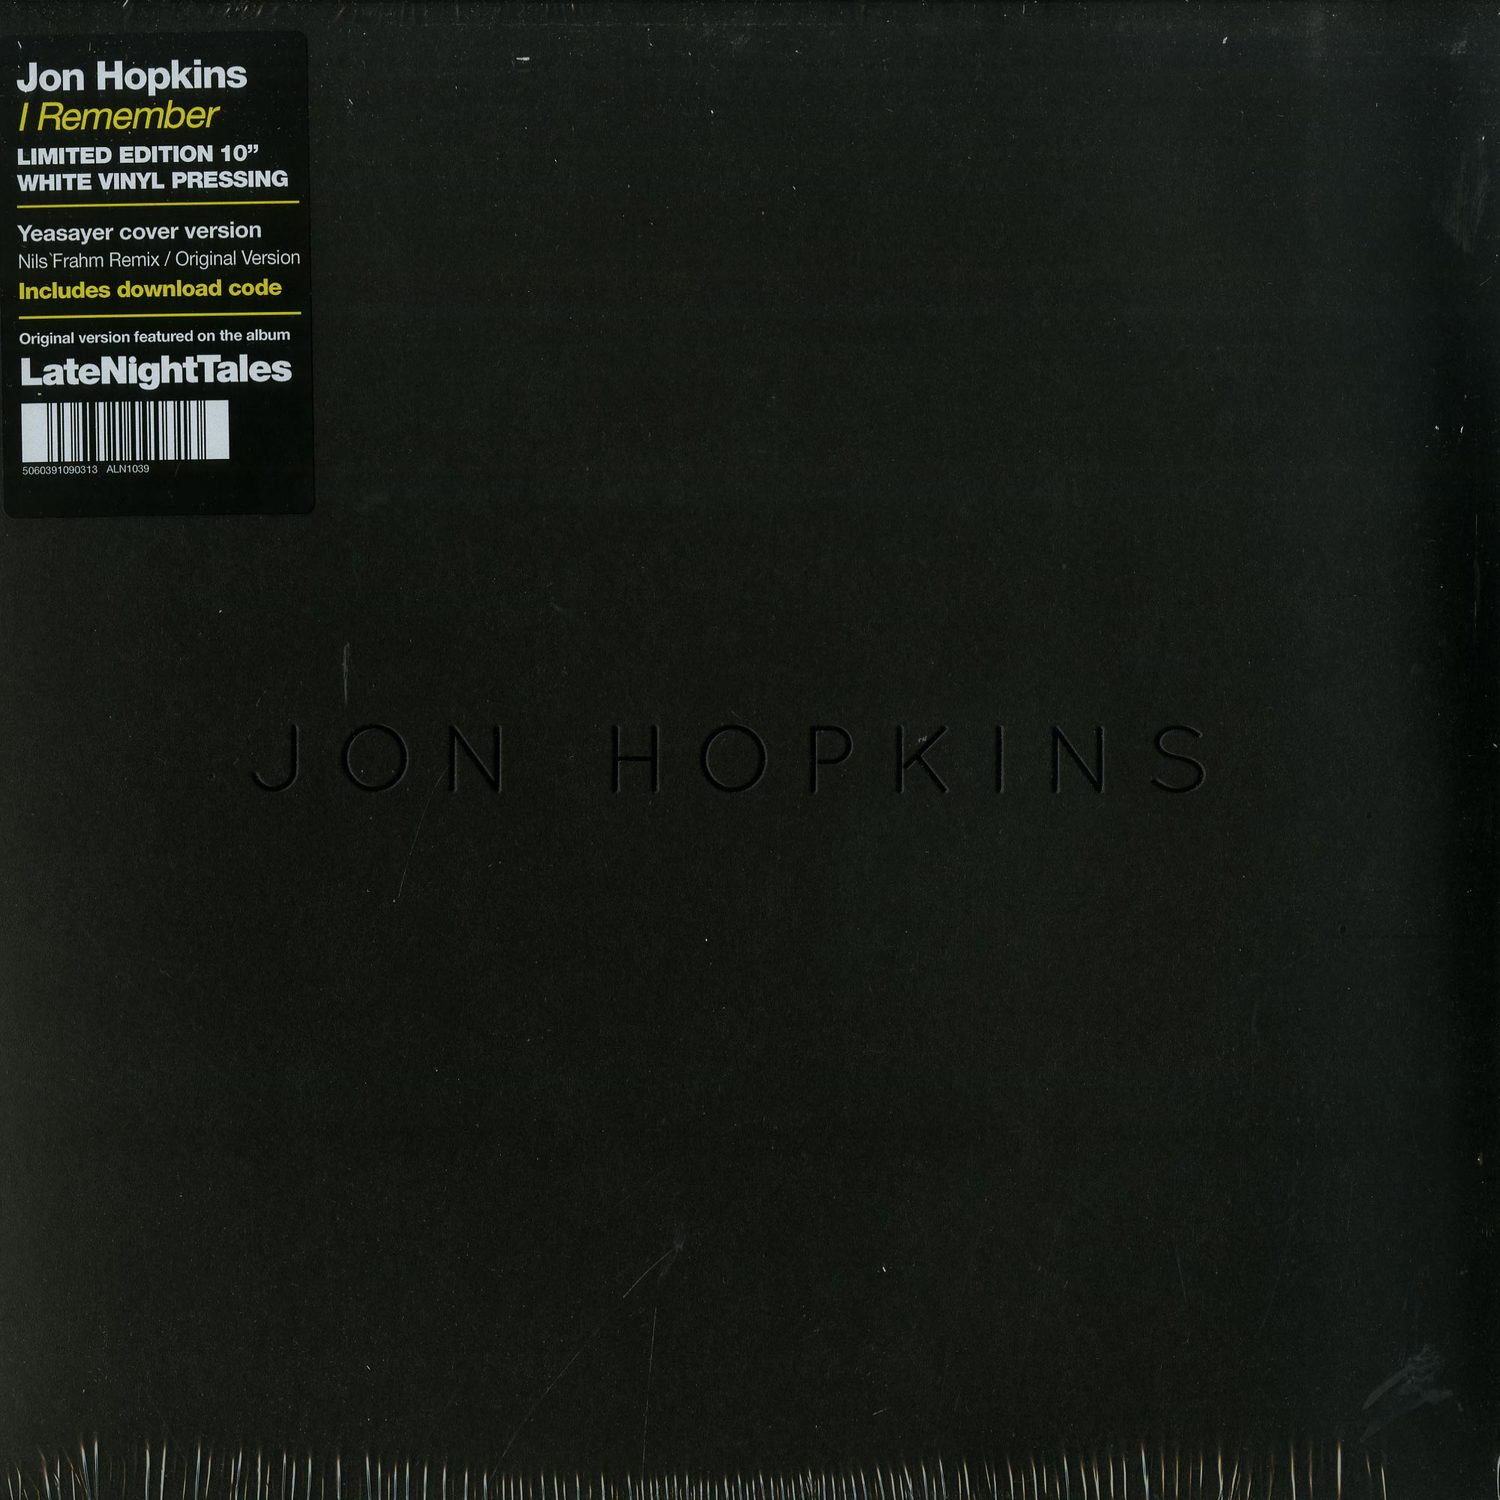 Jon Hopkins - I REMEMBER 